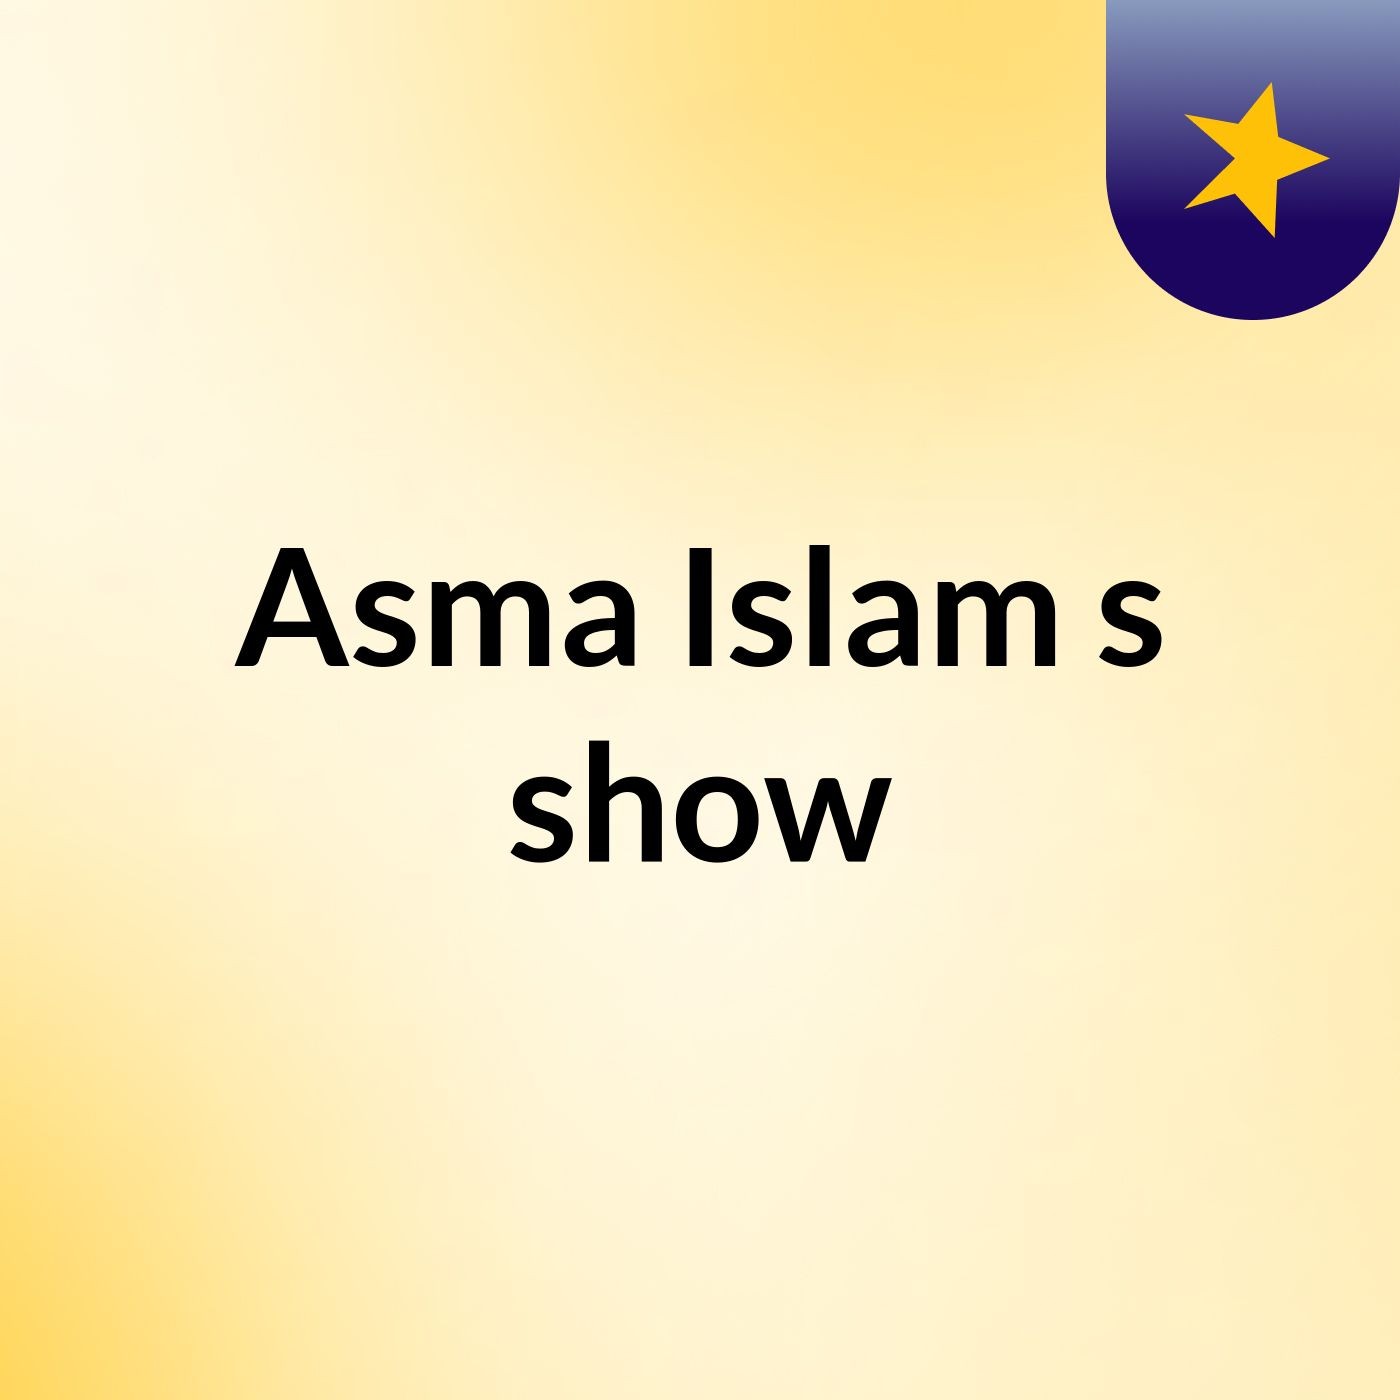 Asma Islam's show